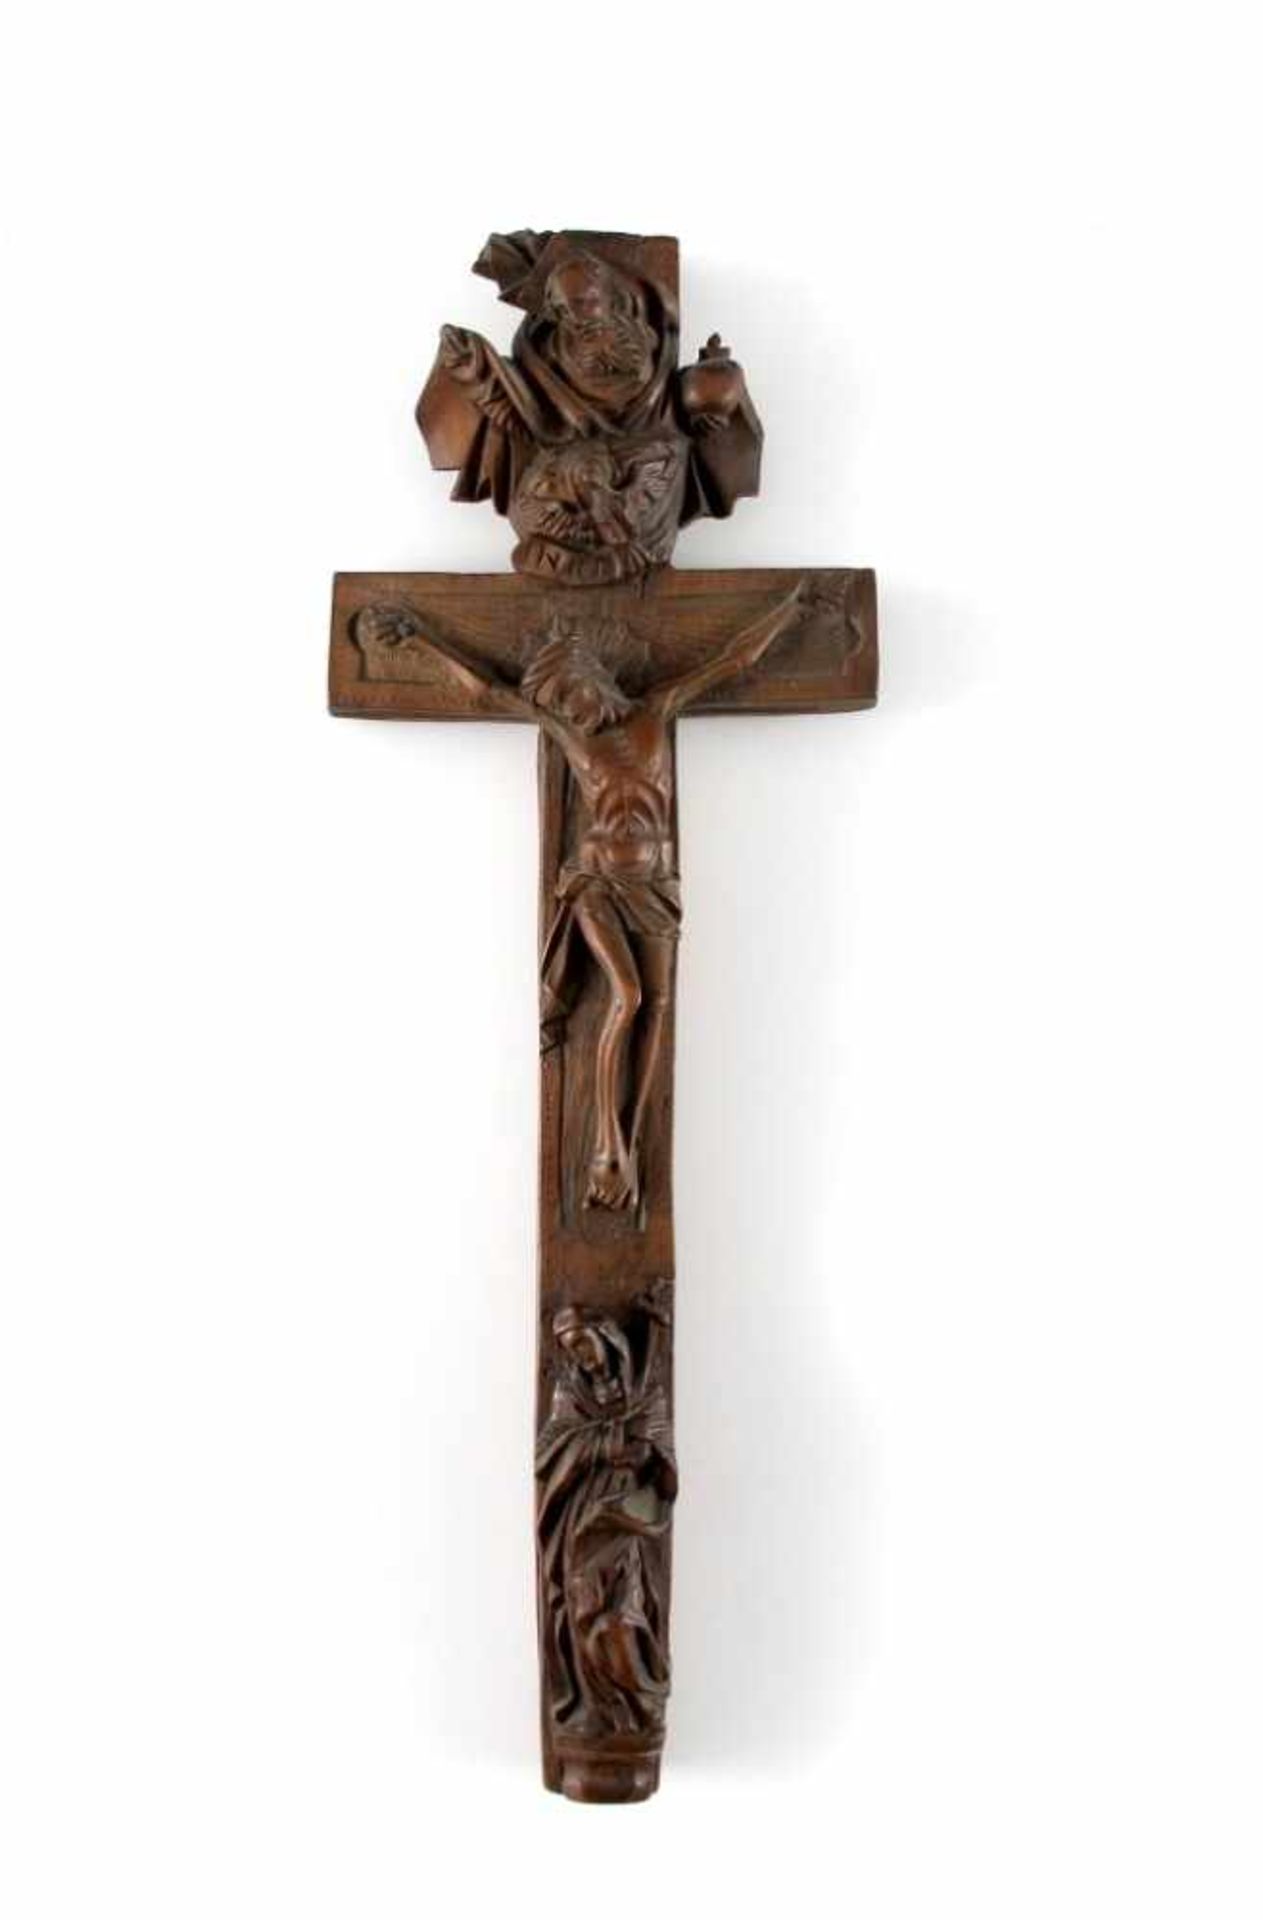 Reliquienkreuz. Gott Vater, Christus und Maria. Ende 18. Jh. H 26,5 cm